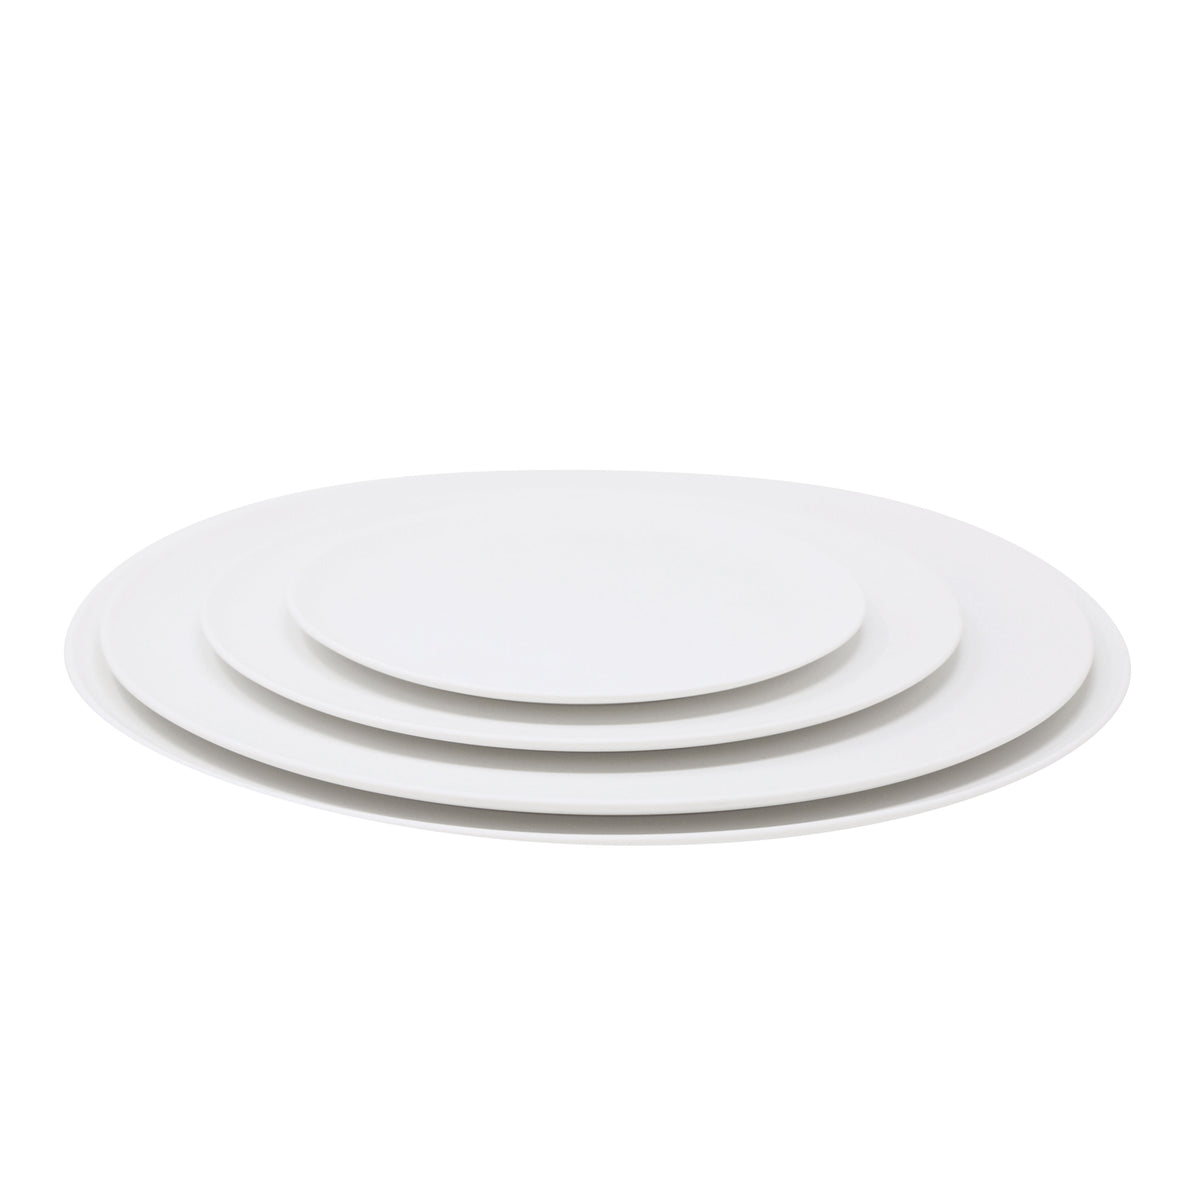 SLIM satin white - Dinner plate